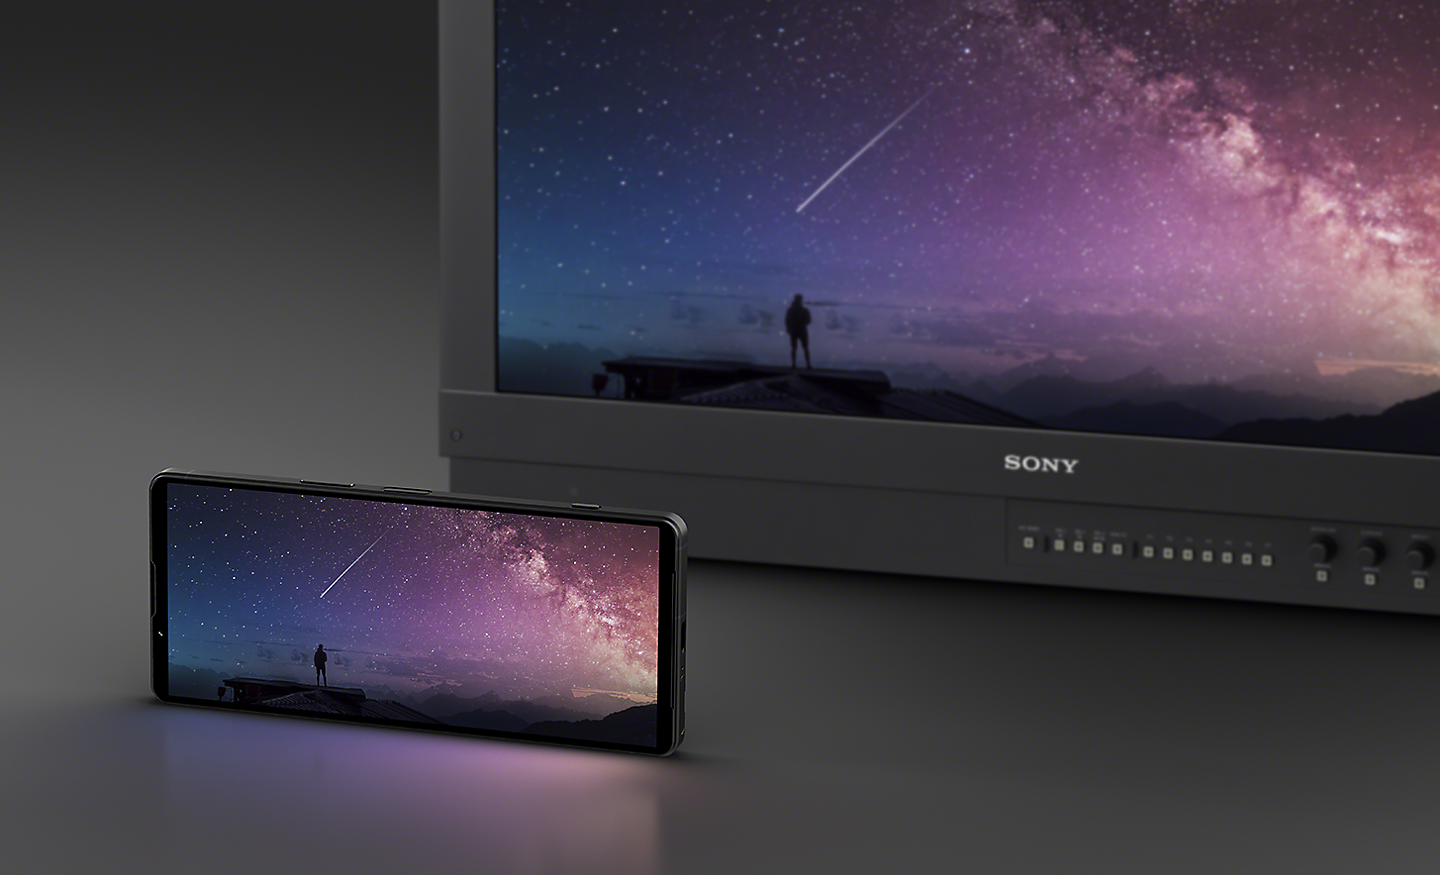 Smartfón Xperia 1 V na šírku pred profesionálnym farebným monitorom od spoločnosti Sony – na oboch zariadeniach sa zobrazuje rovnaký obrázok nočnej oblohy